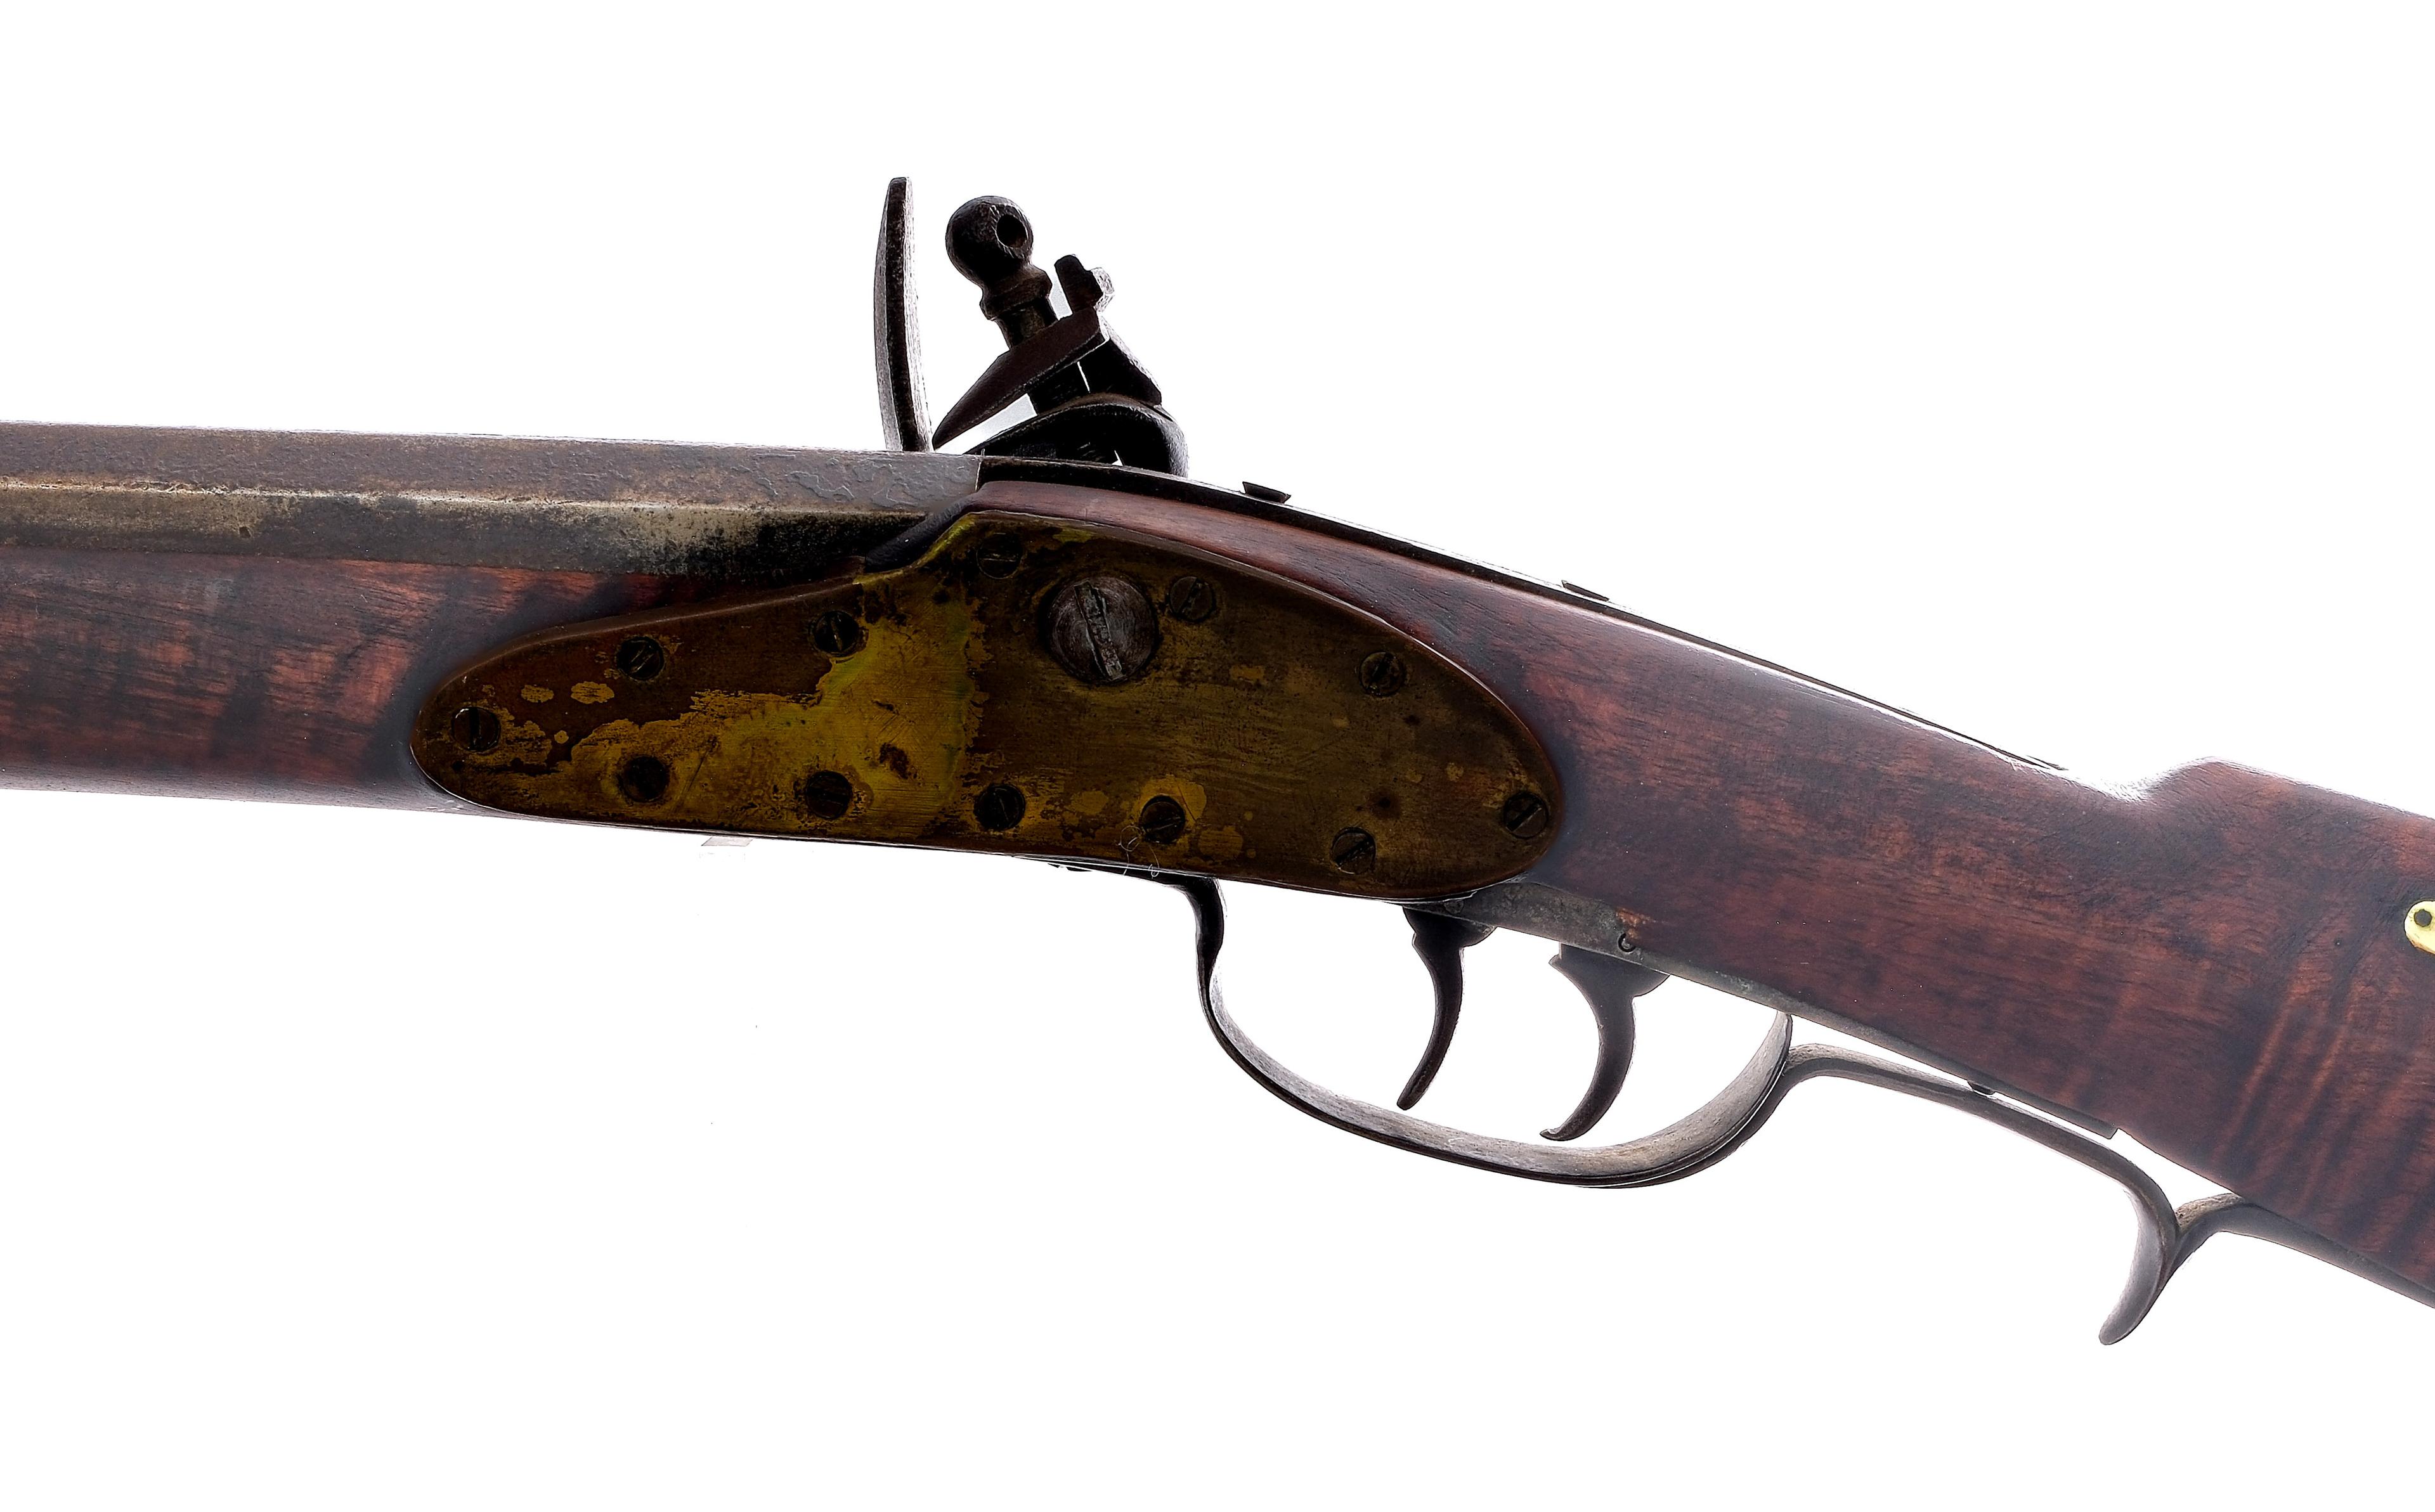 Antique Kentucky Long Flintlock Rifle .44